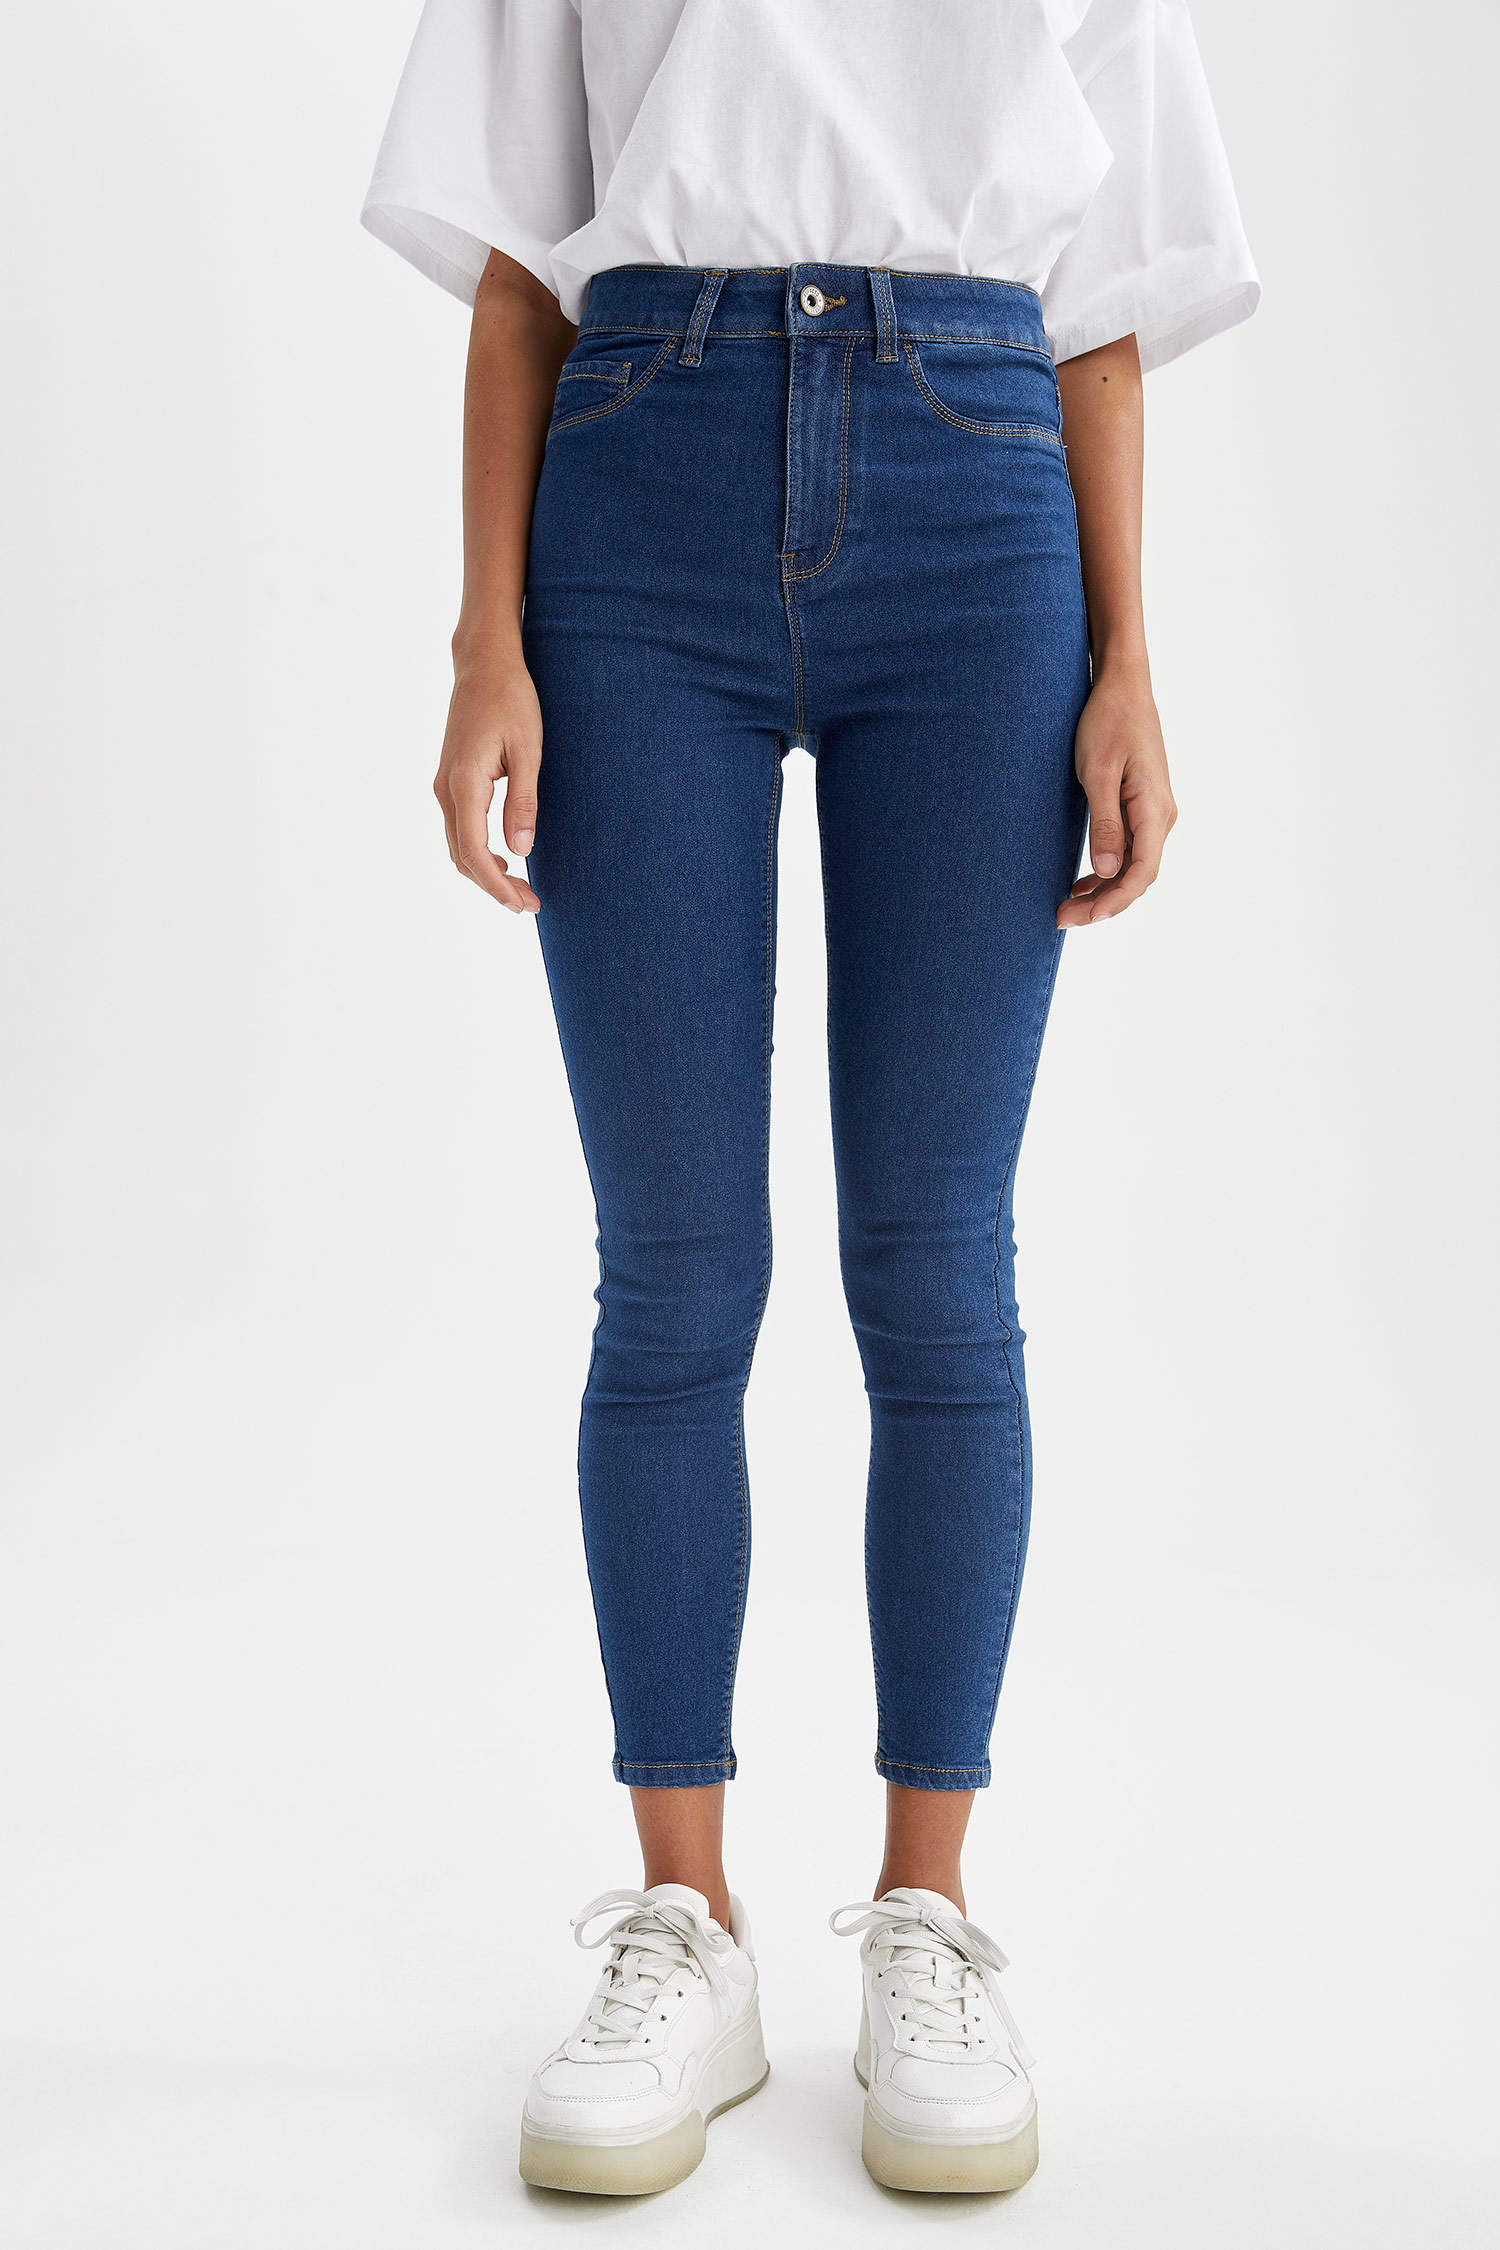 Kinderdag Pool mogelijkheid Blue Woman Skinny Fit High Waisted Denim Jeans 1140914 | DeFacto